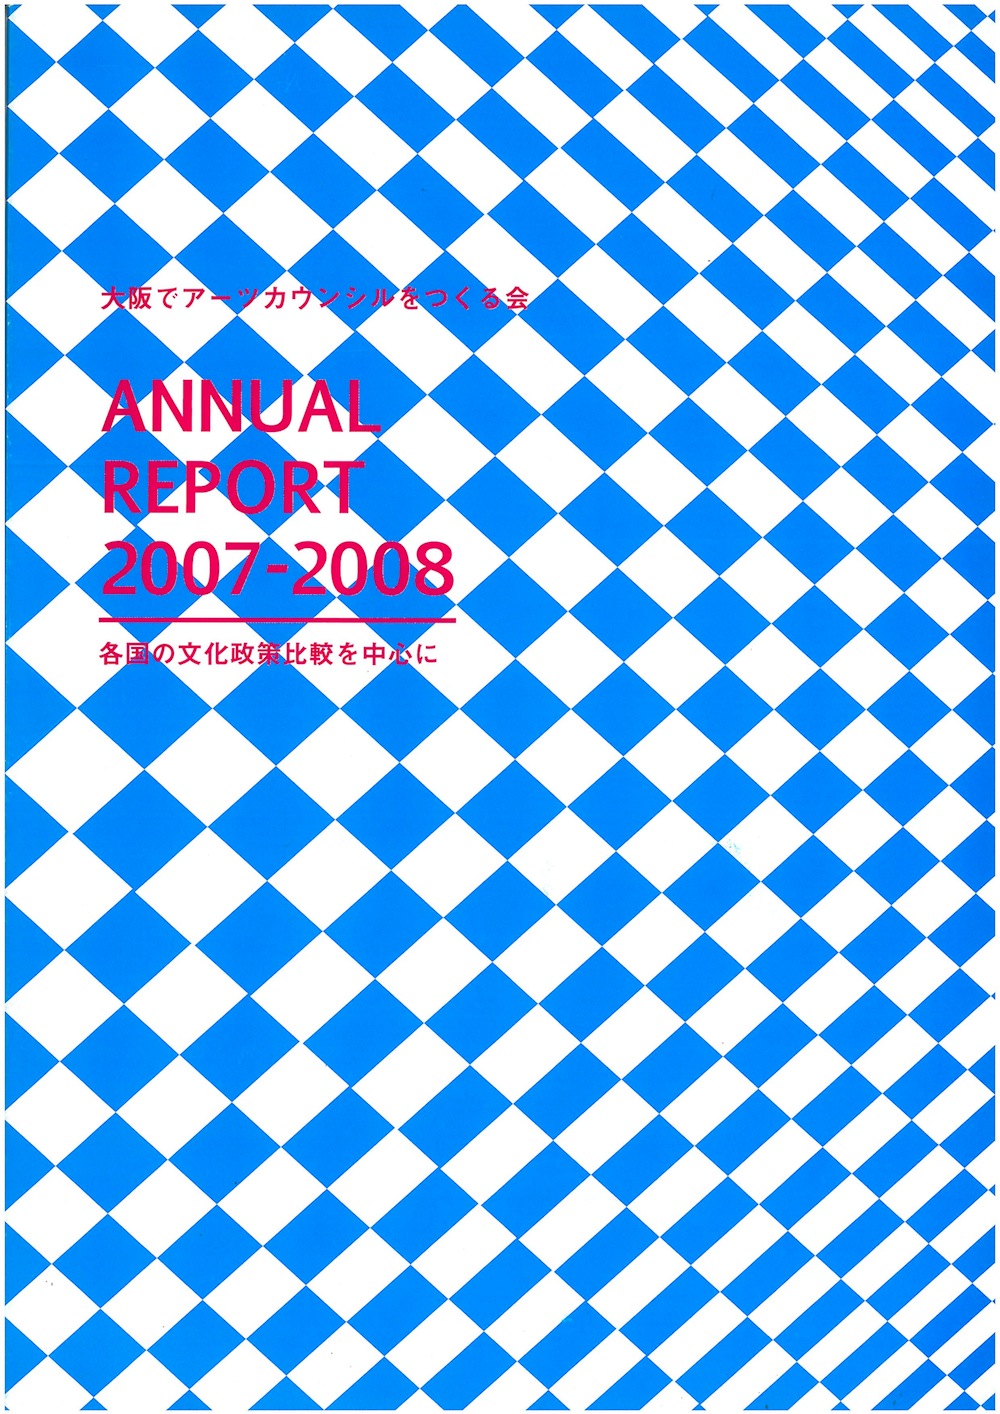 大阪でアーツカウンシルをつくる会 ANNUAL REPORT2007-2008